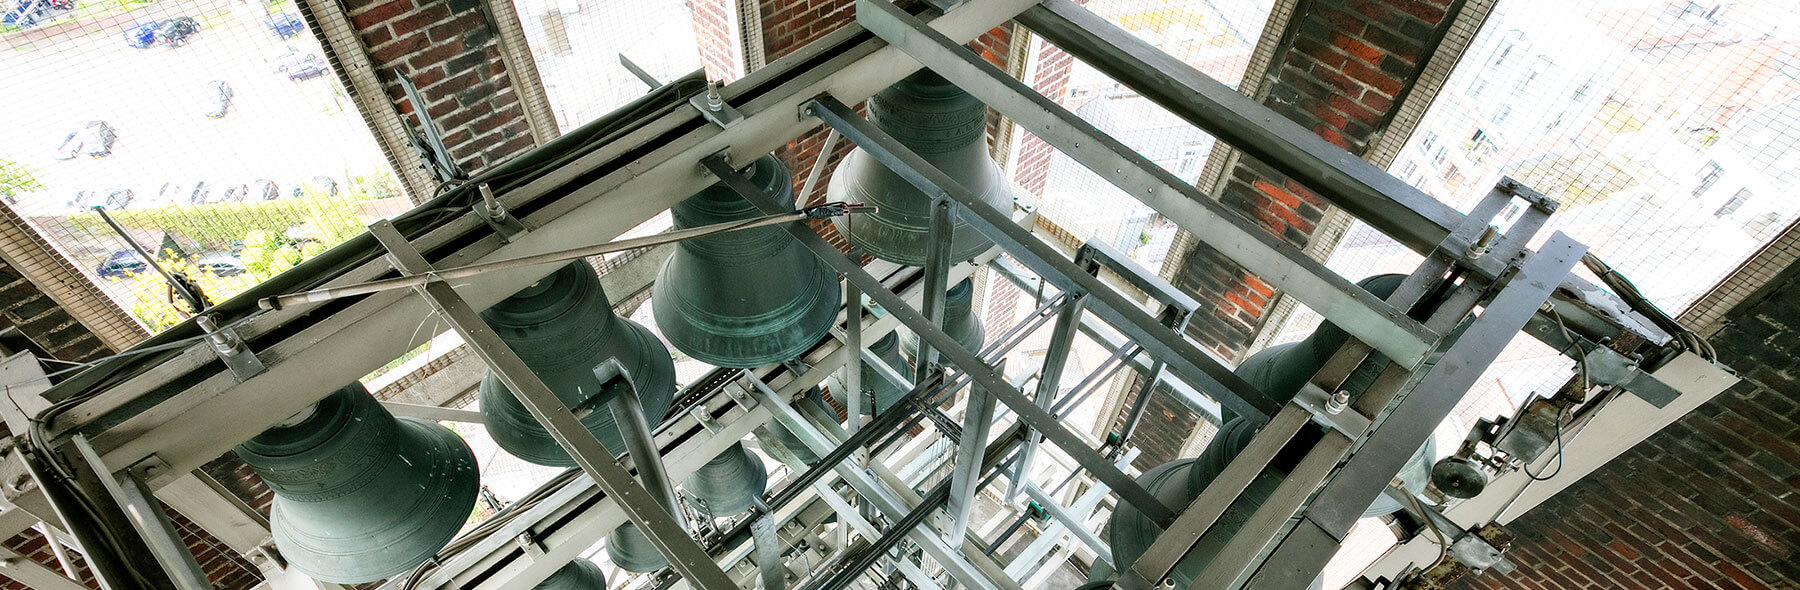 Stichting Het Venloos Carillon - Het Carillon